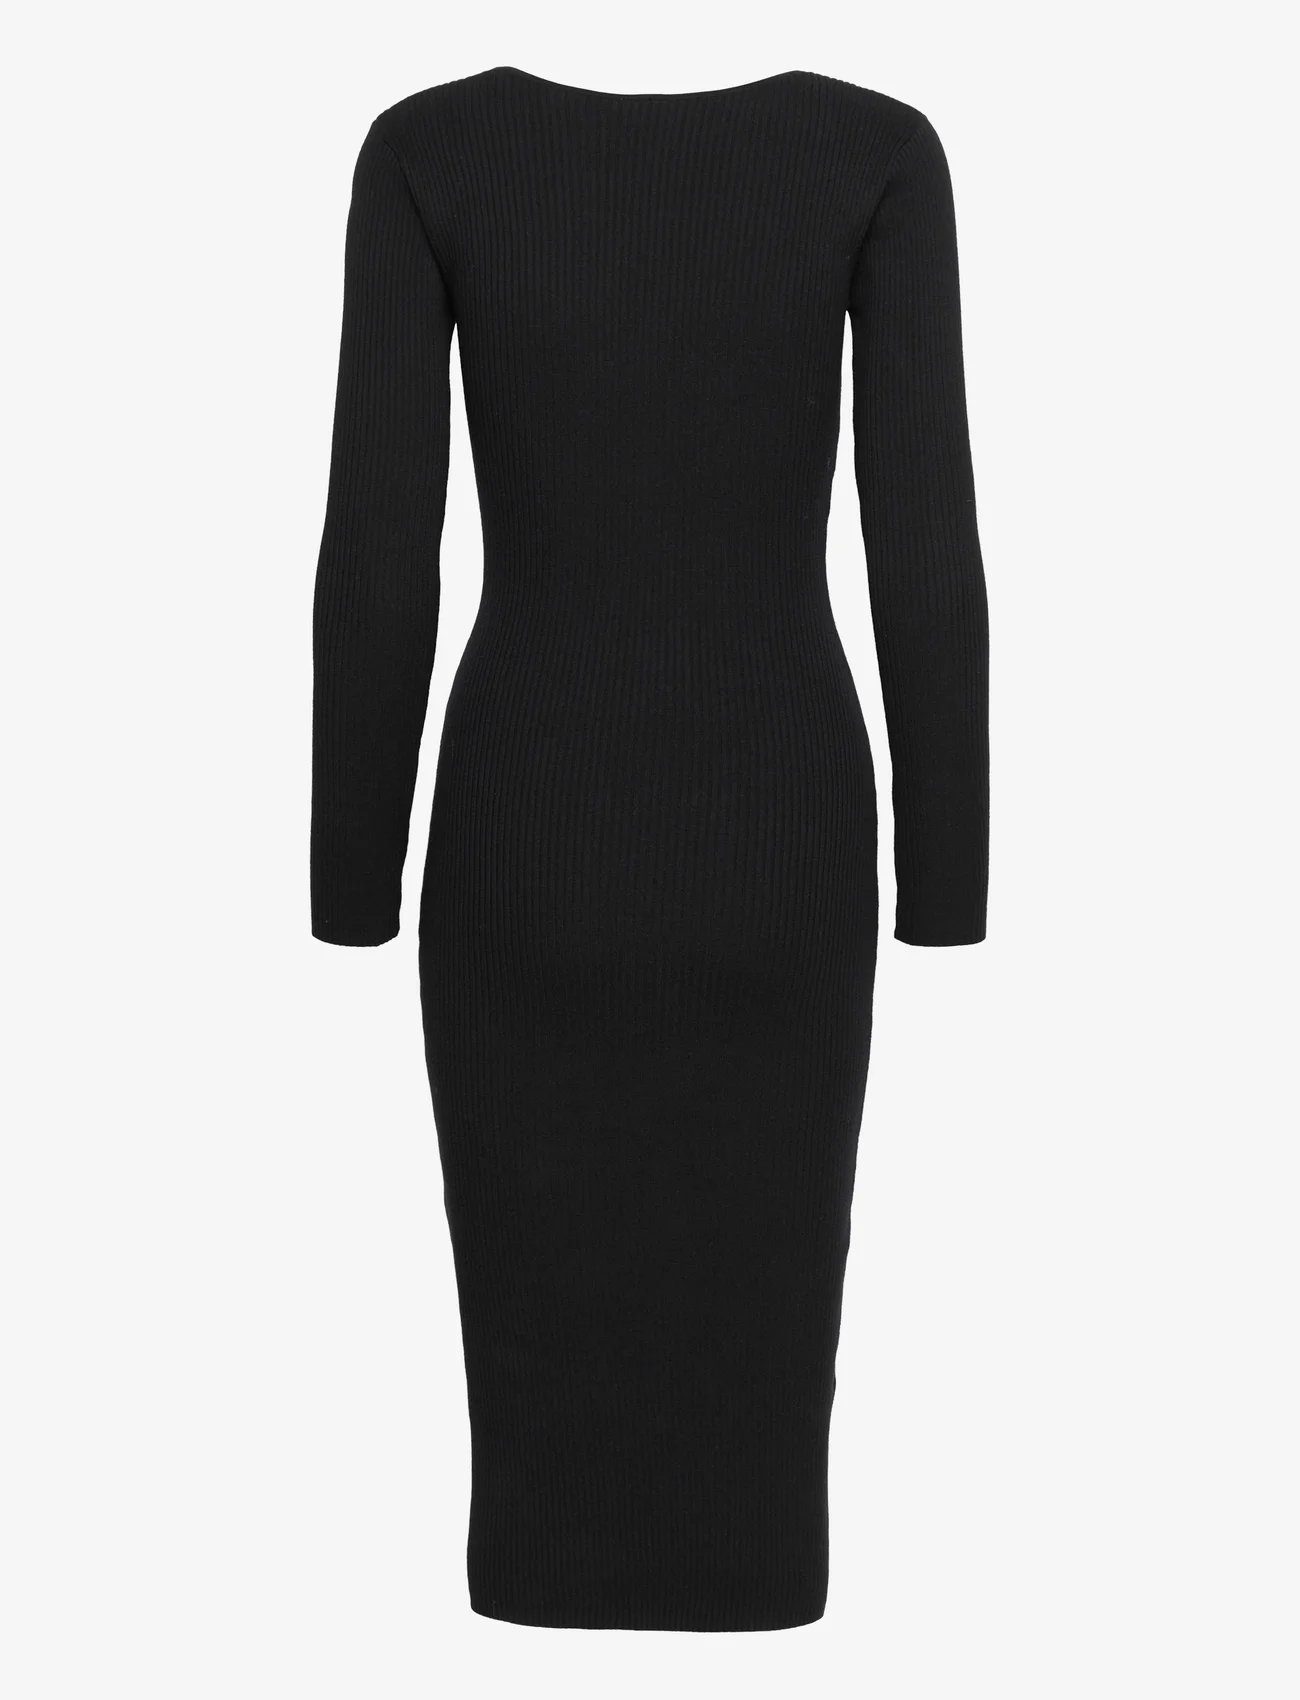 Twist & Tango - Elodie Dress - sukienki dopasowane - black - 1